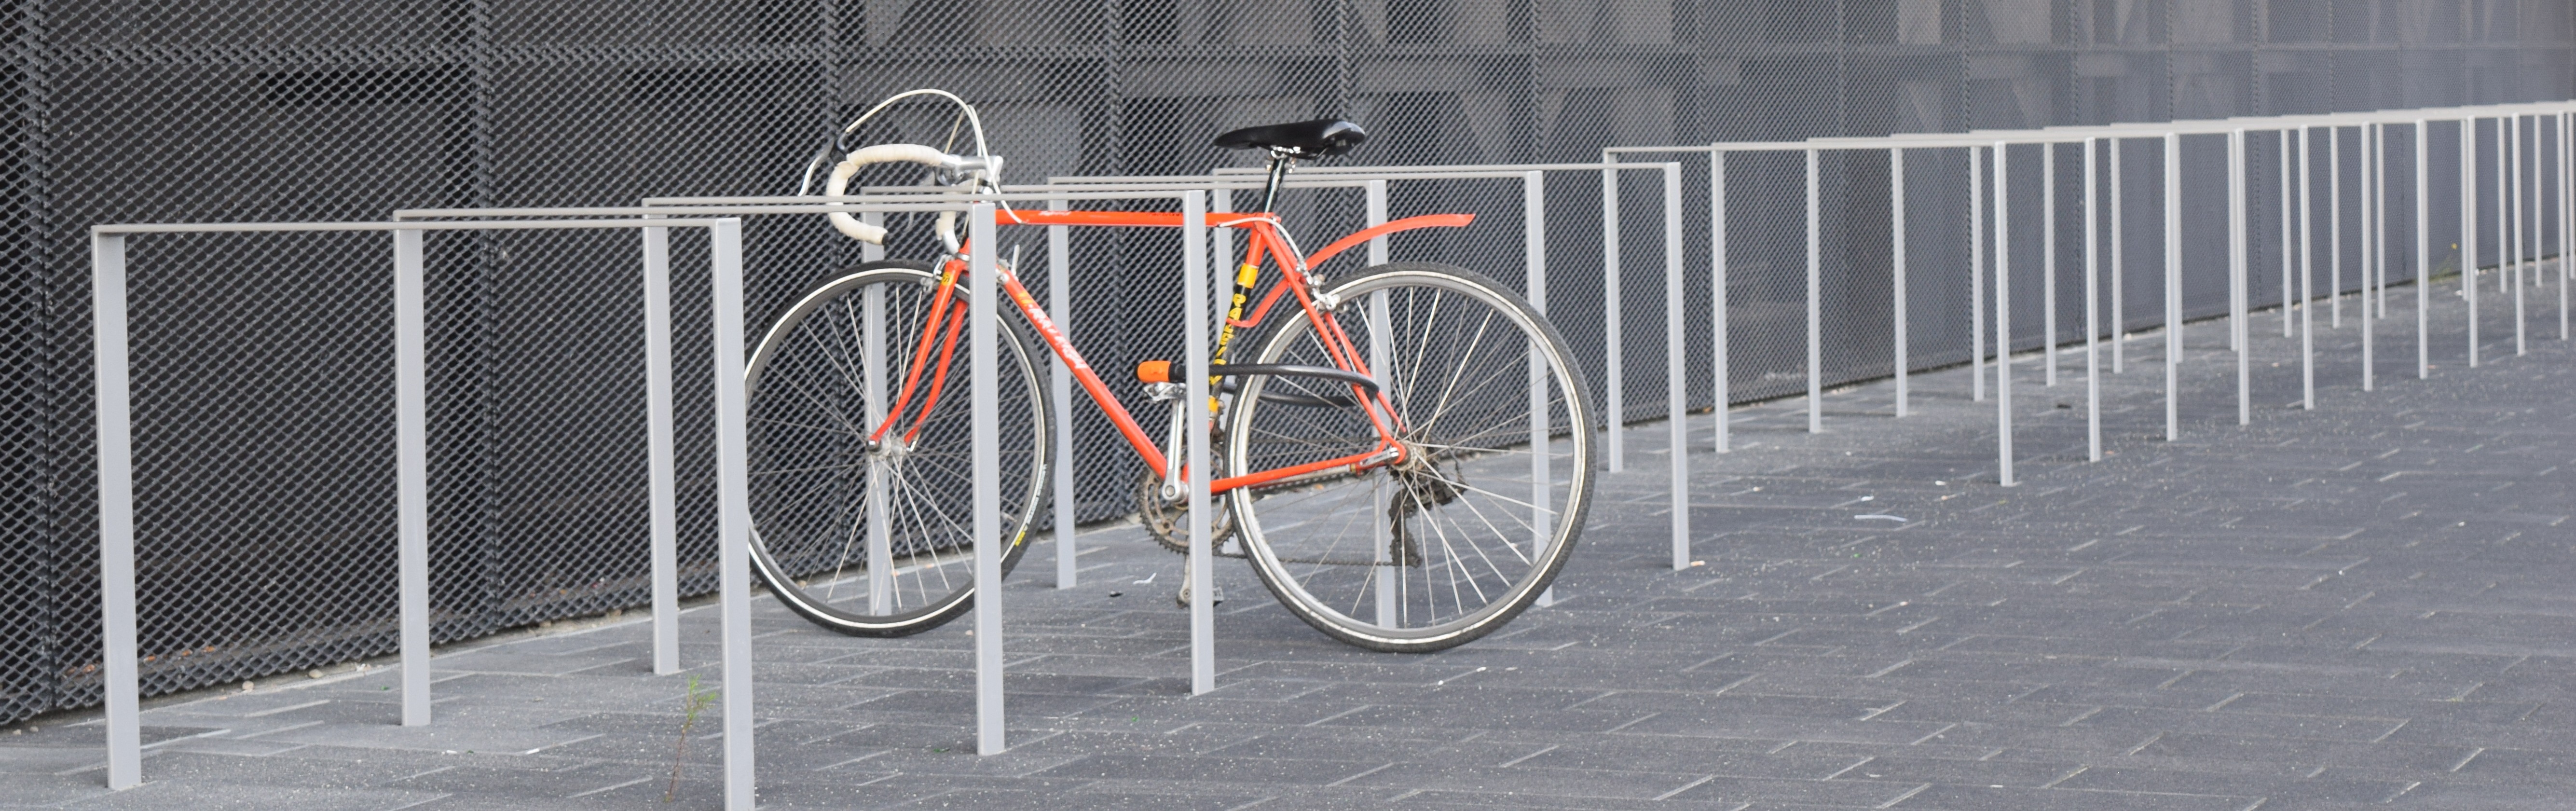 Bike stand photo